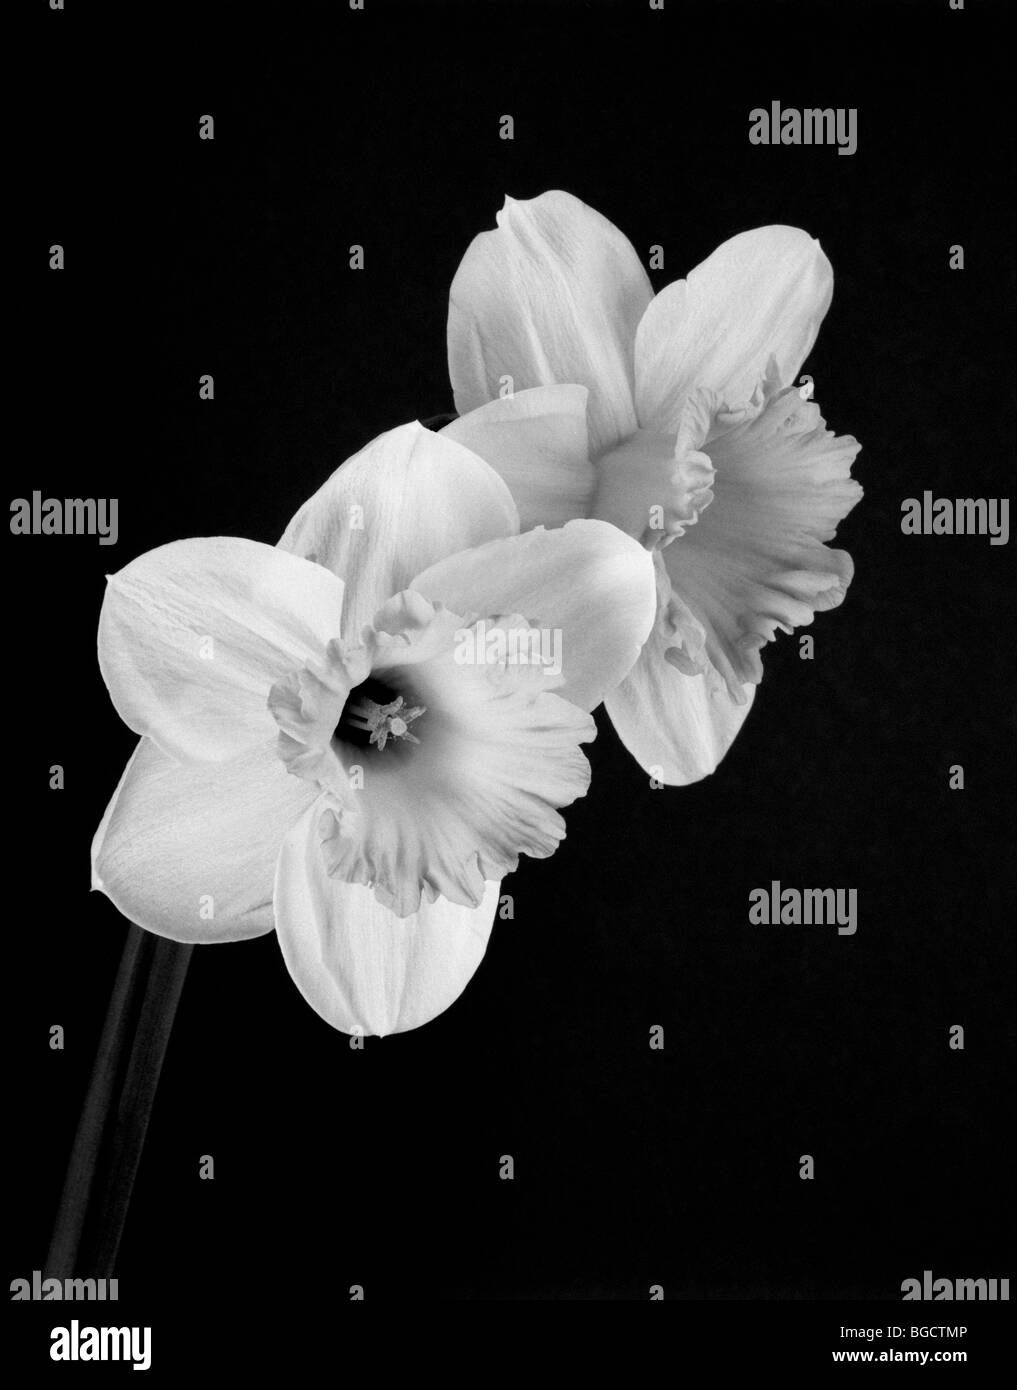 Washington - Daffodil fiori in bianco e nero. Foto Stock